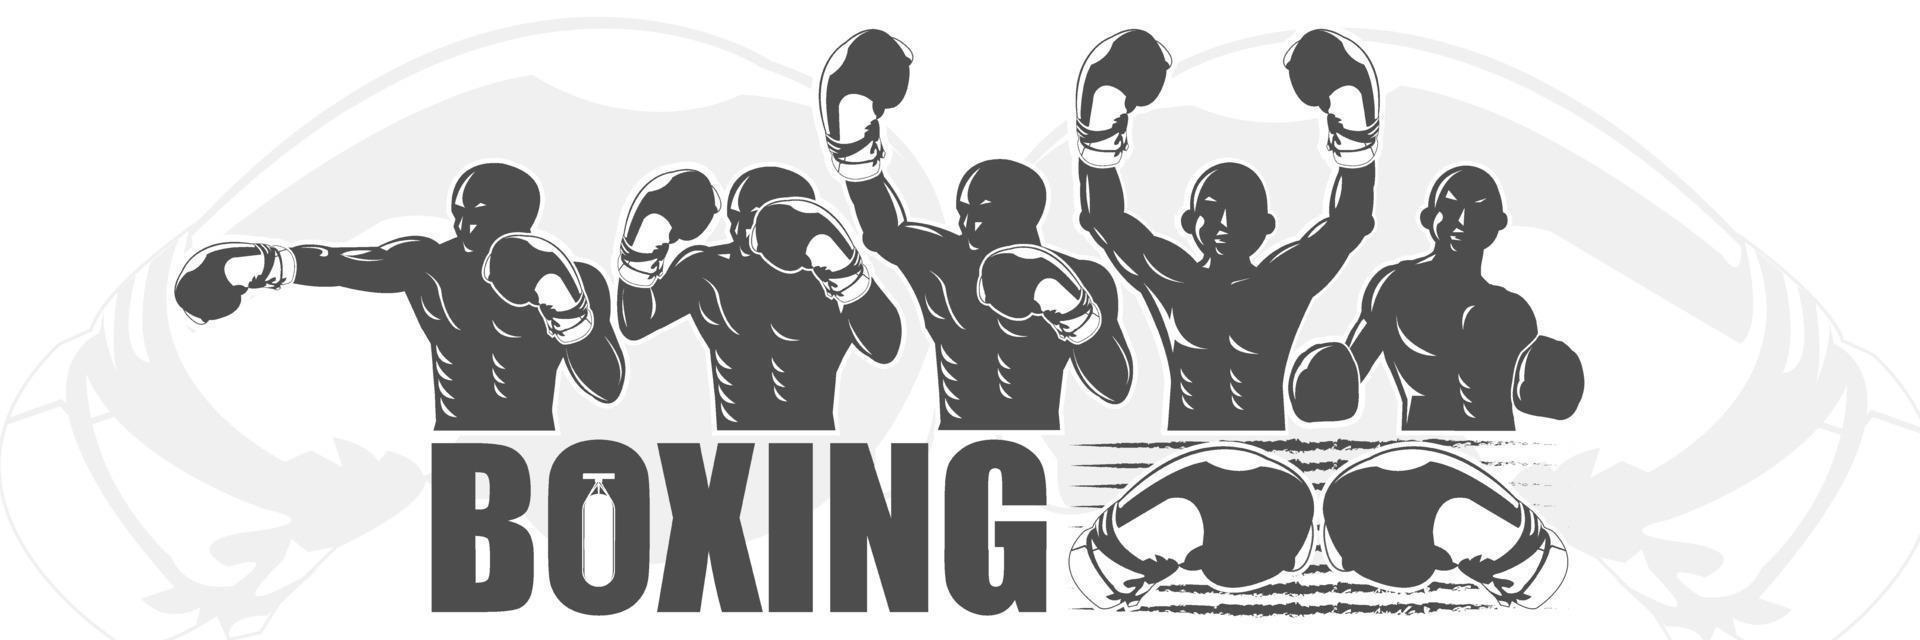 ilustración del concepto de cinco ganadores para el banner de boxeo vector